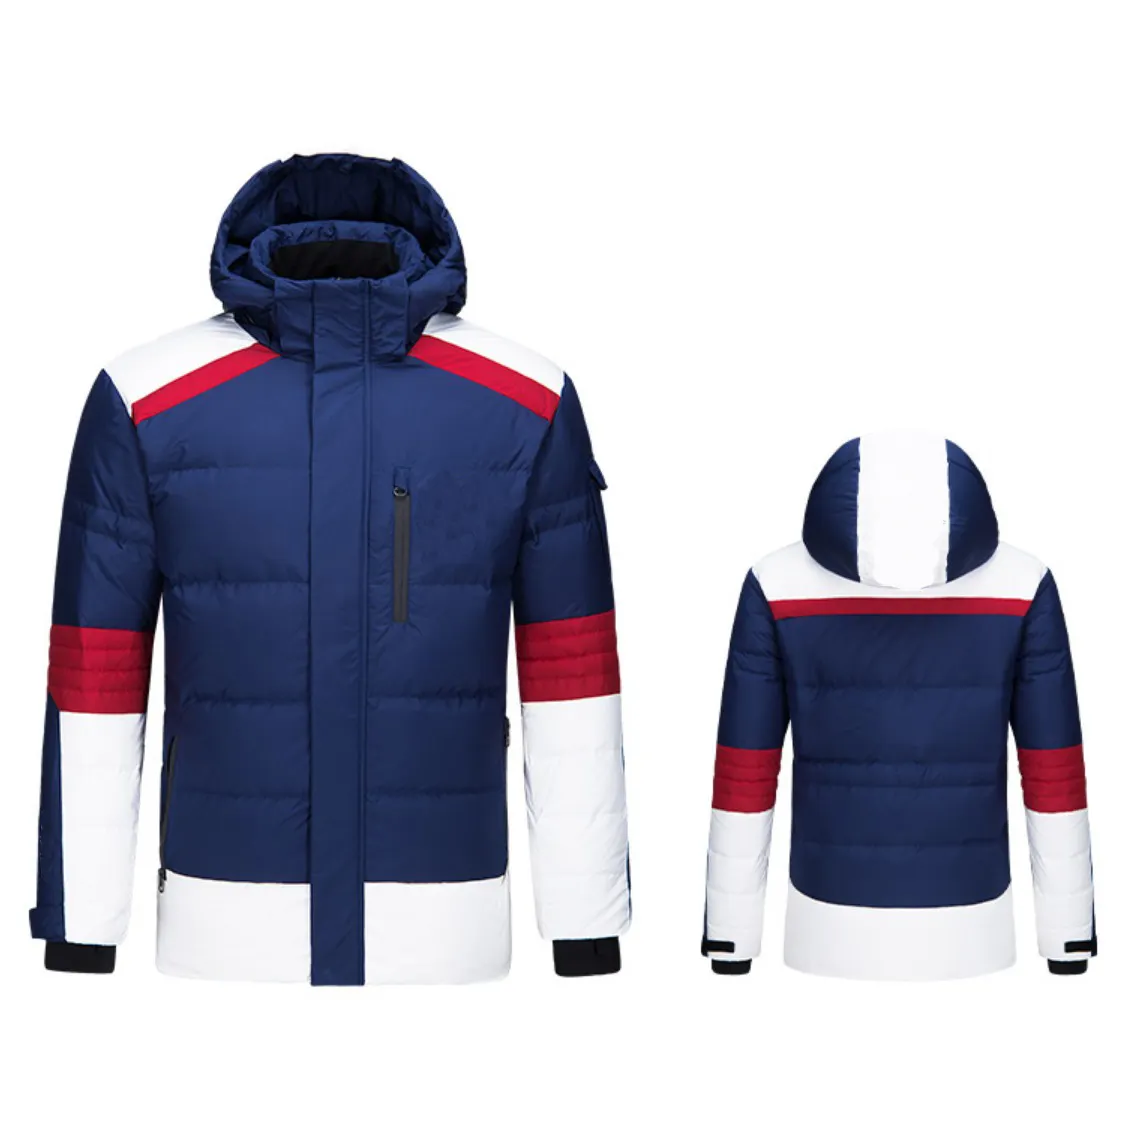 Chaqueta de vela giyim üreticileri yurtdışı kayak ceket erkekler yelken ceket uzun dolgu ceket